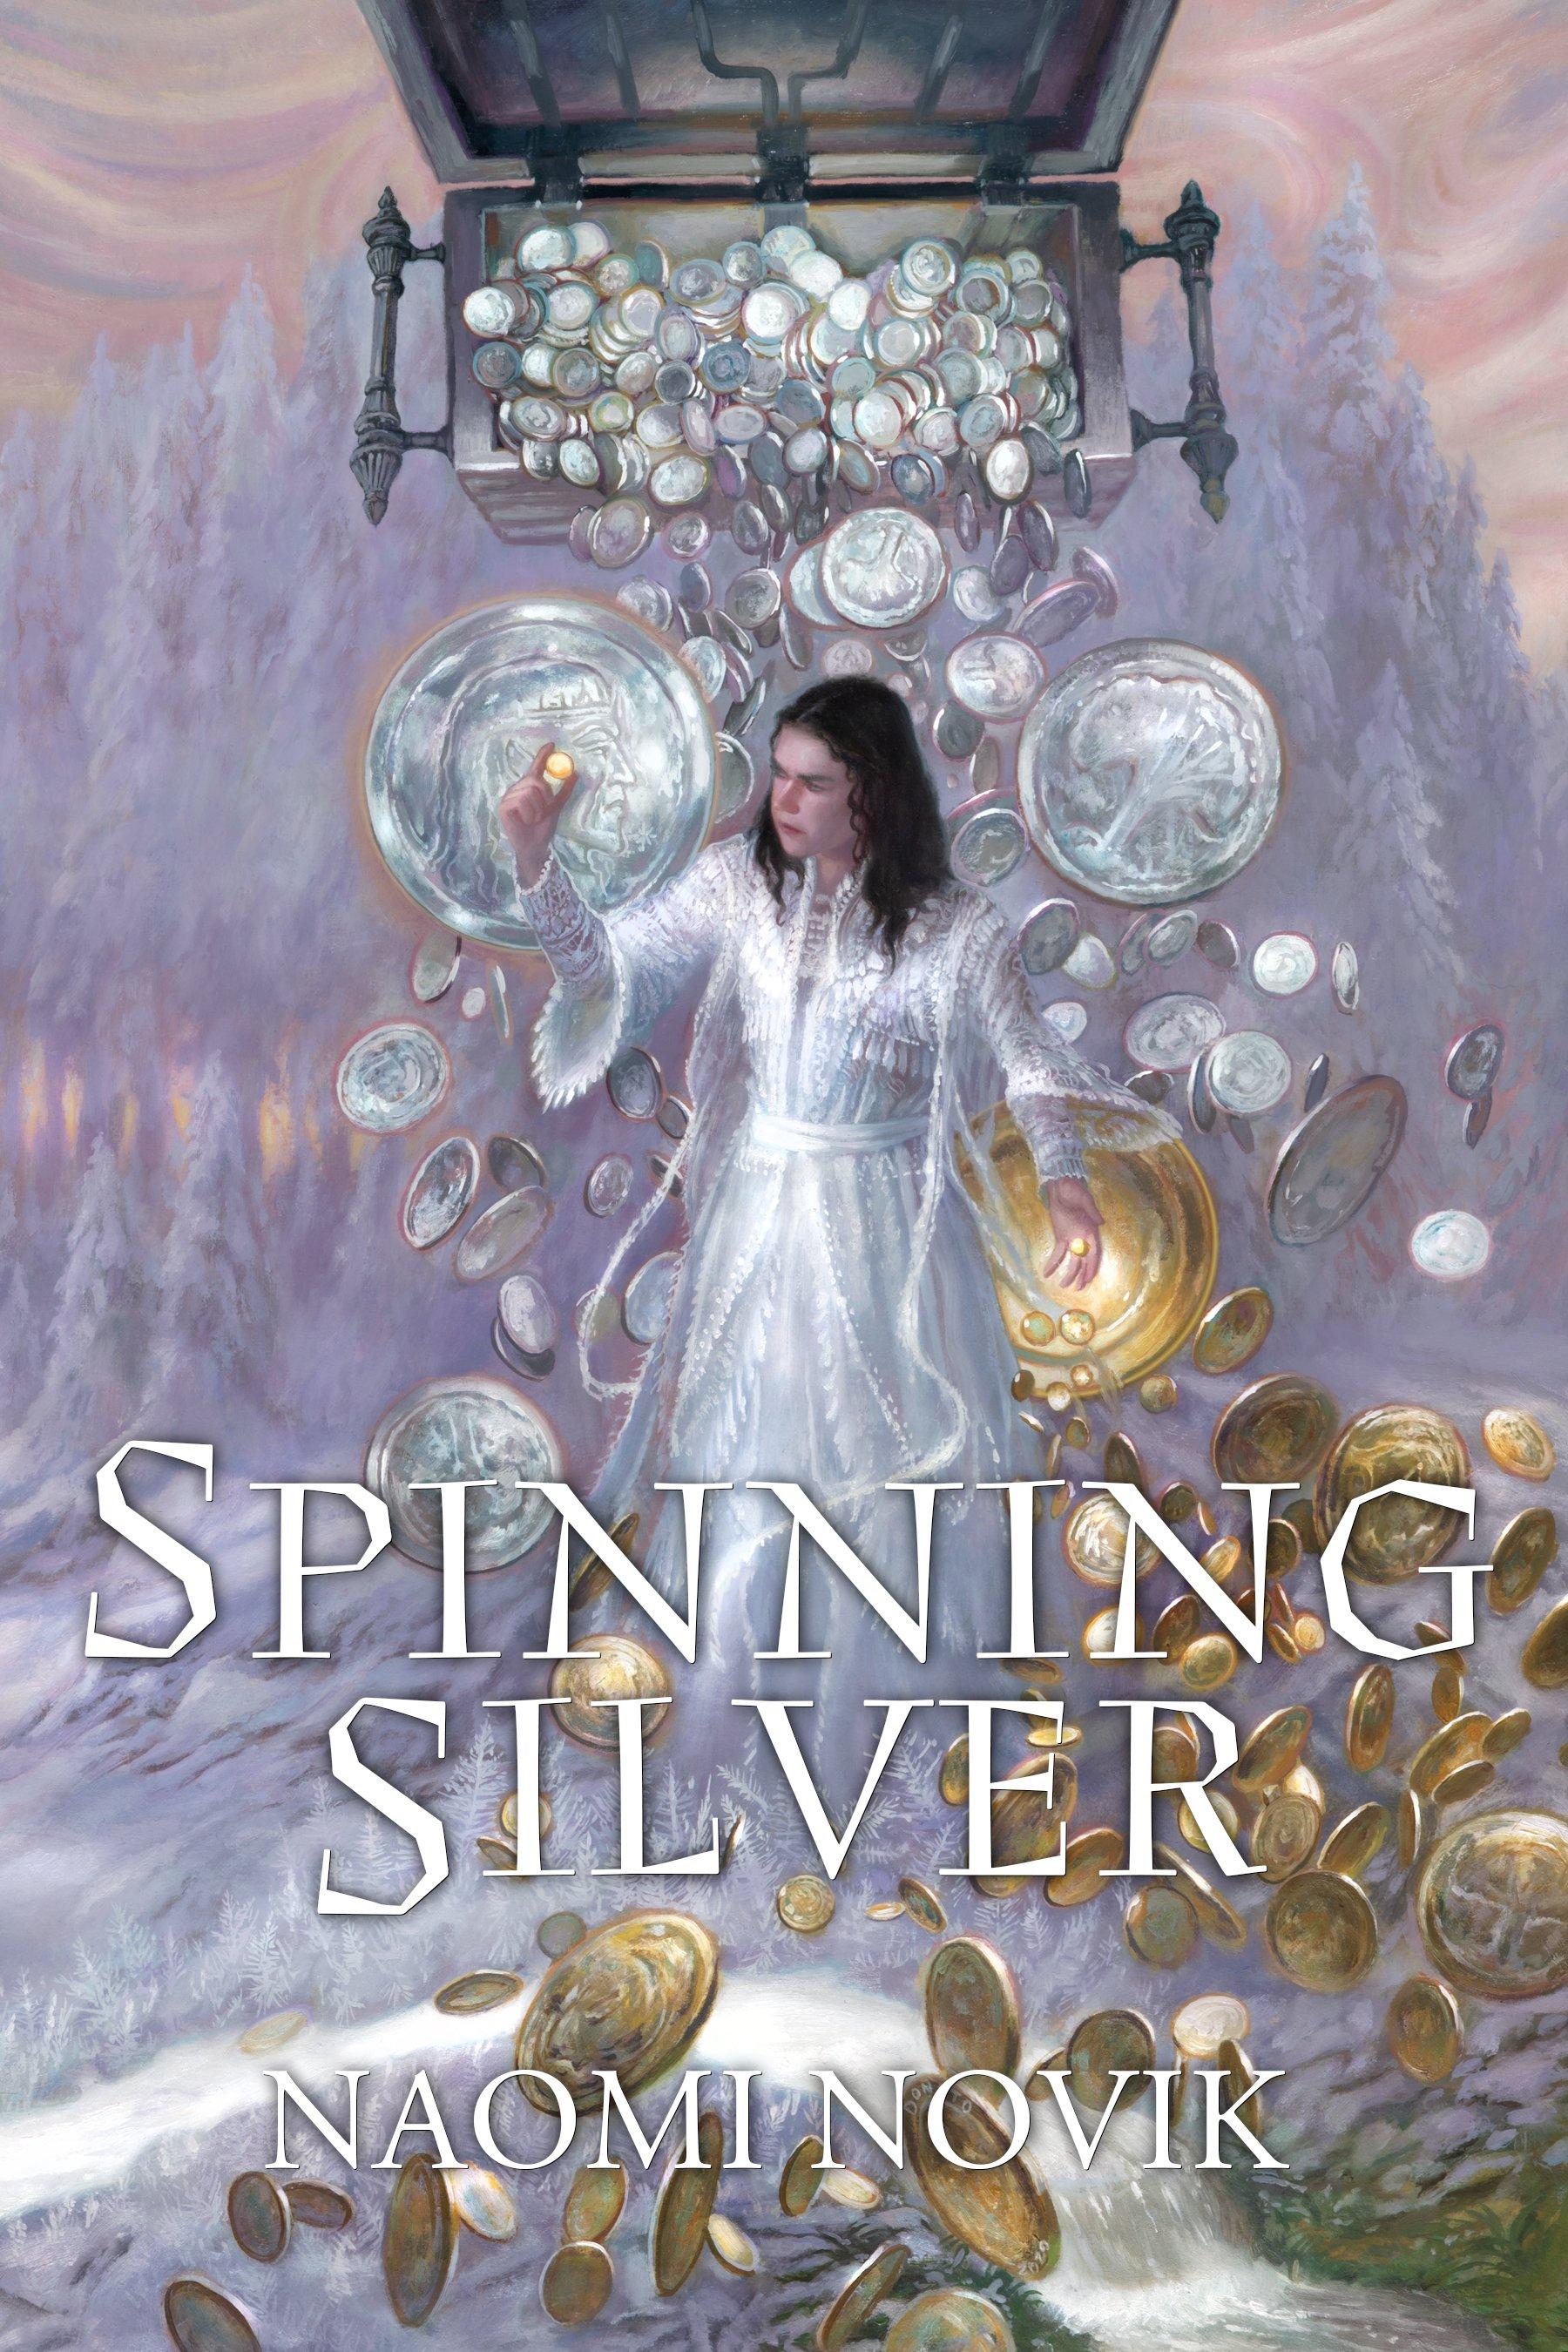 spinning silver naomi novik download epub